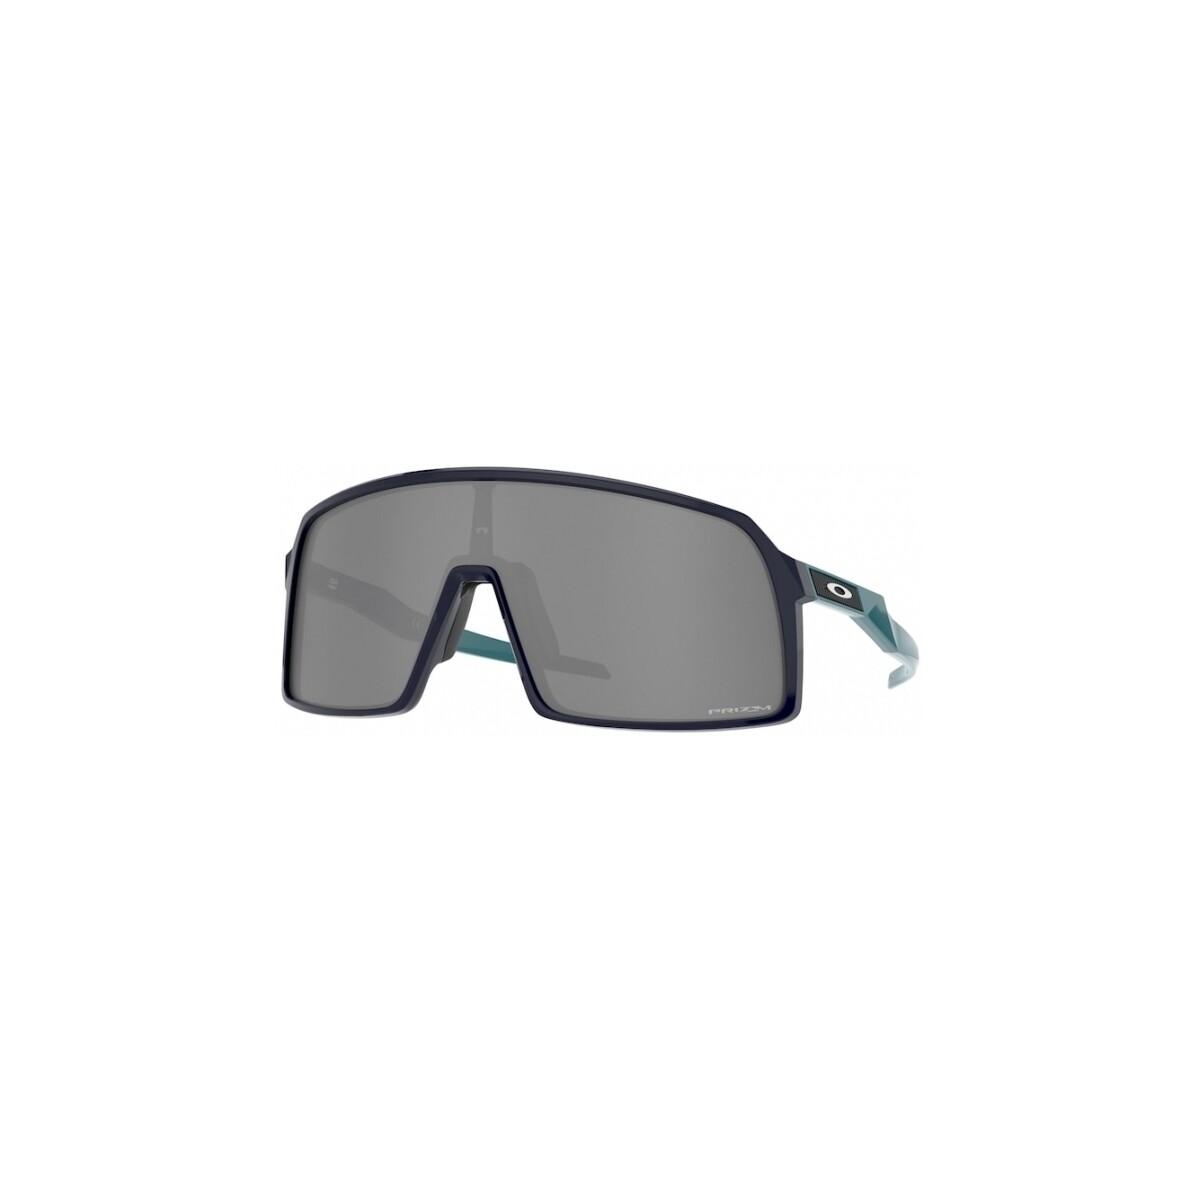 Orologi & Gioielli Uomo Occhiali da sole Oakley OO9406 SUTRO Occhiali da sole, Blu/Nero, 37 mm Blu